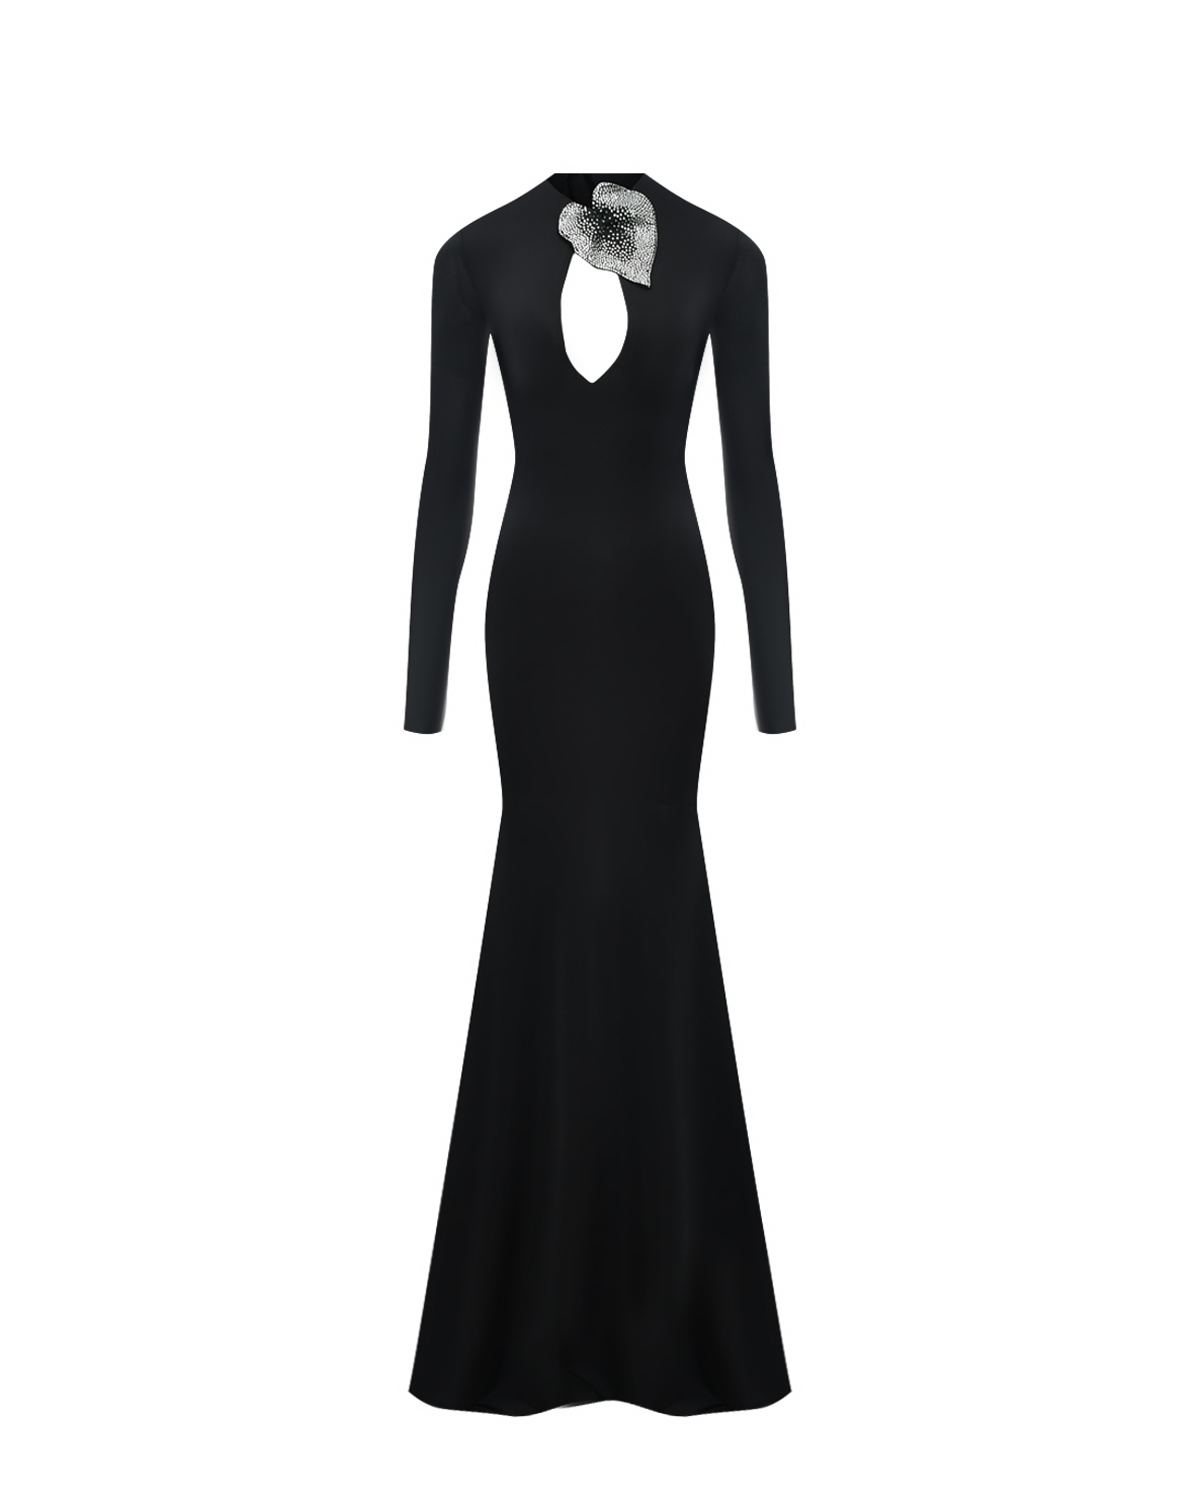 Платье со шлейфом, черное Giuseppe di Morabito, размер 42, цвет черный - фото 1